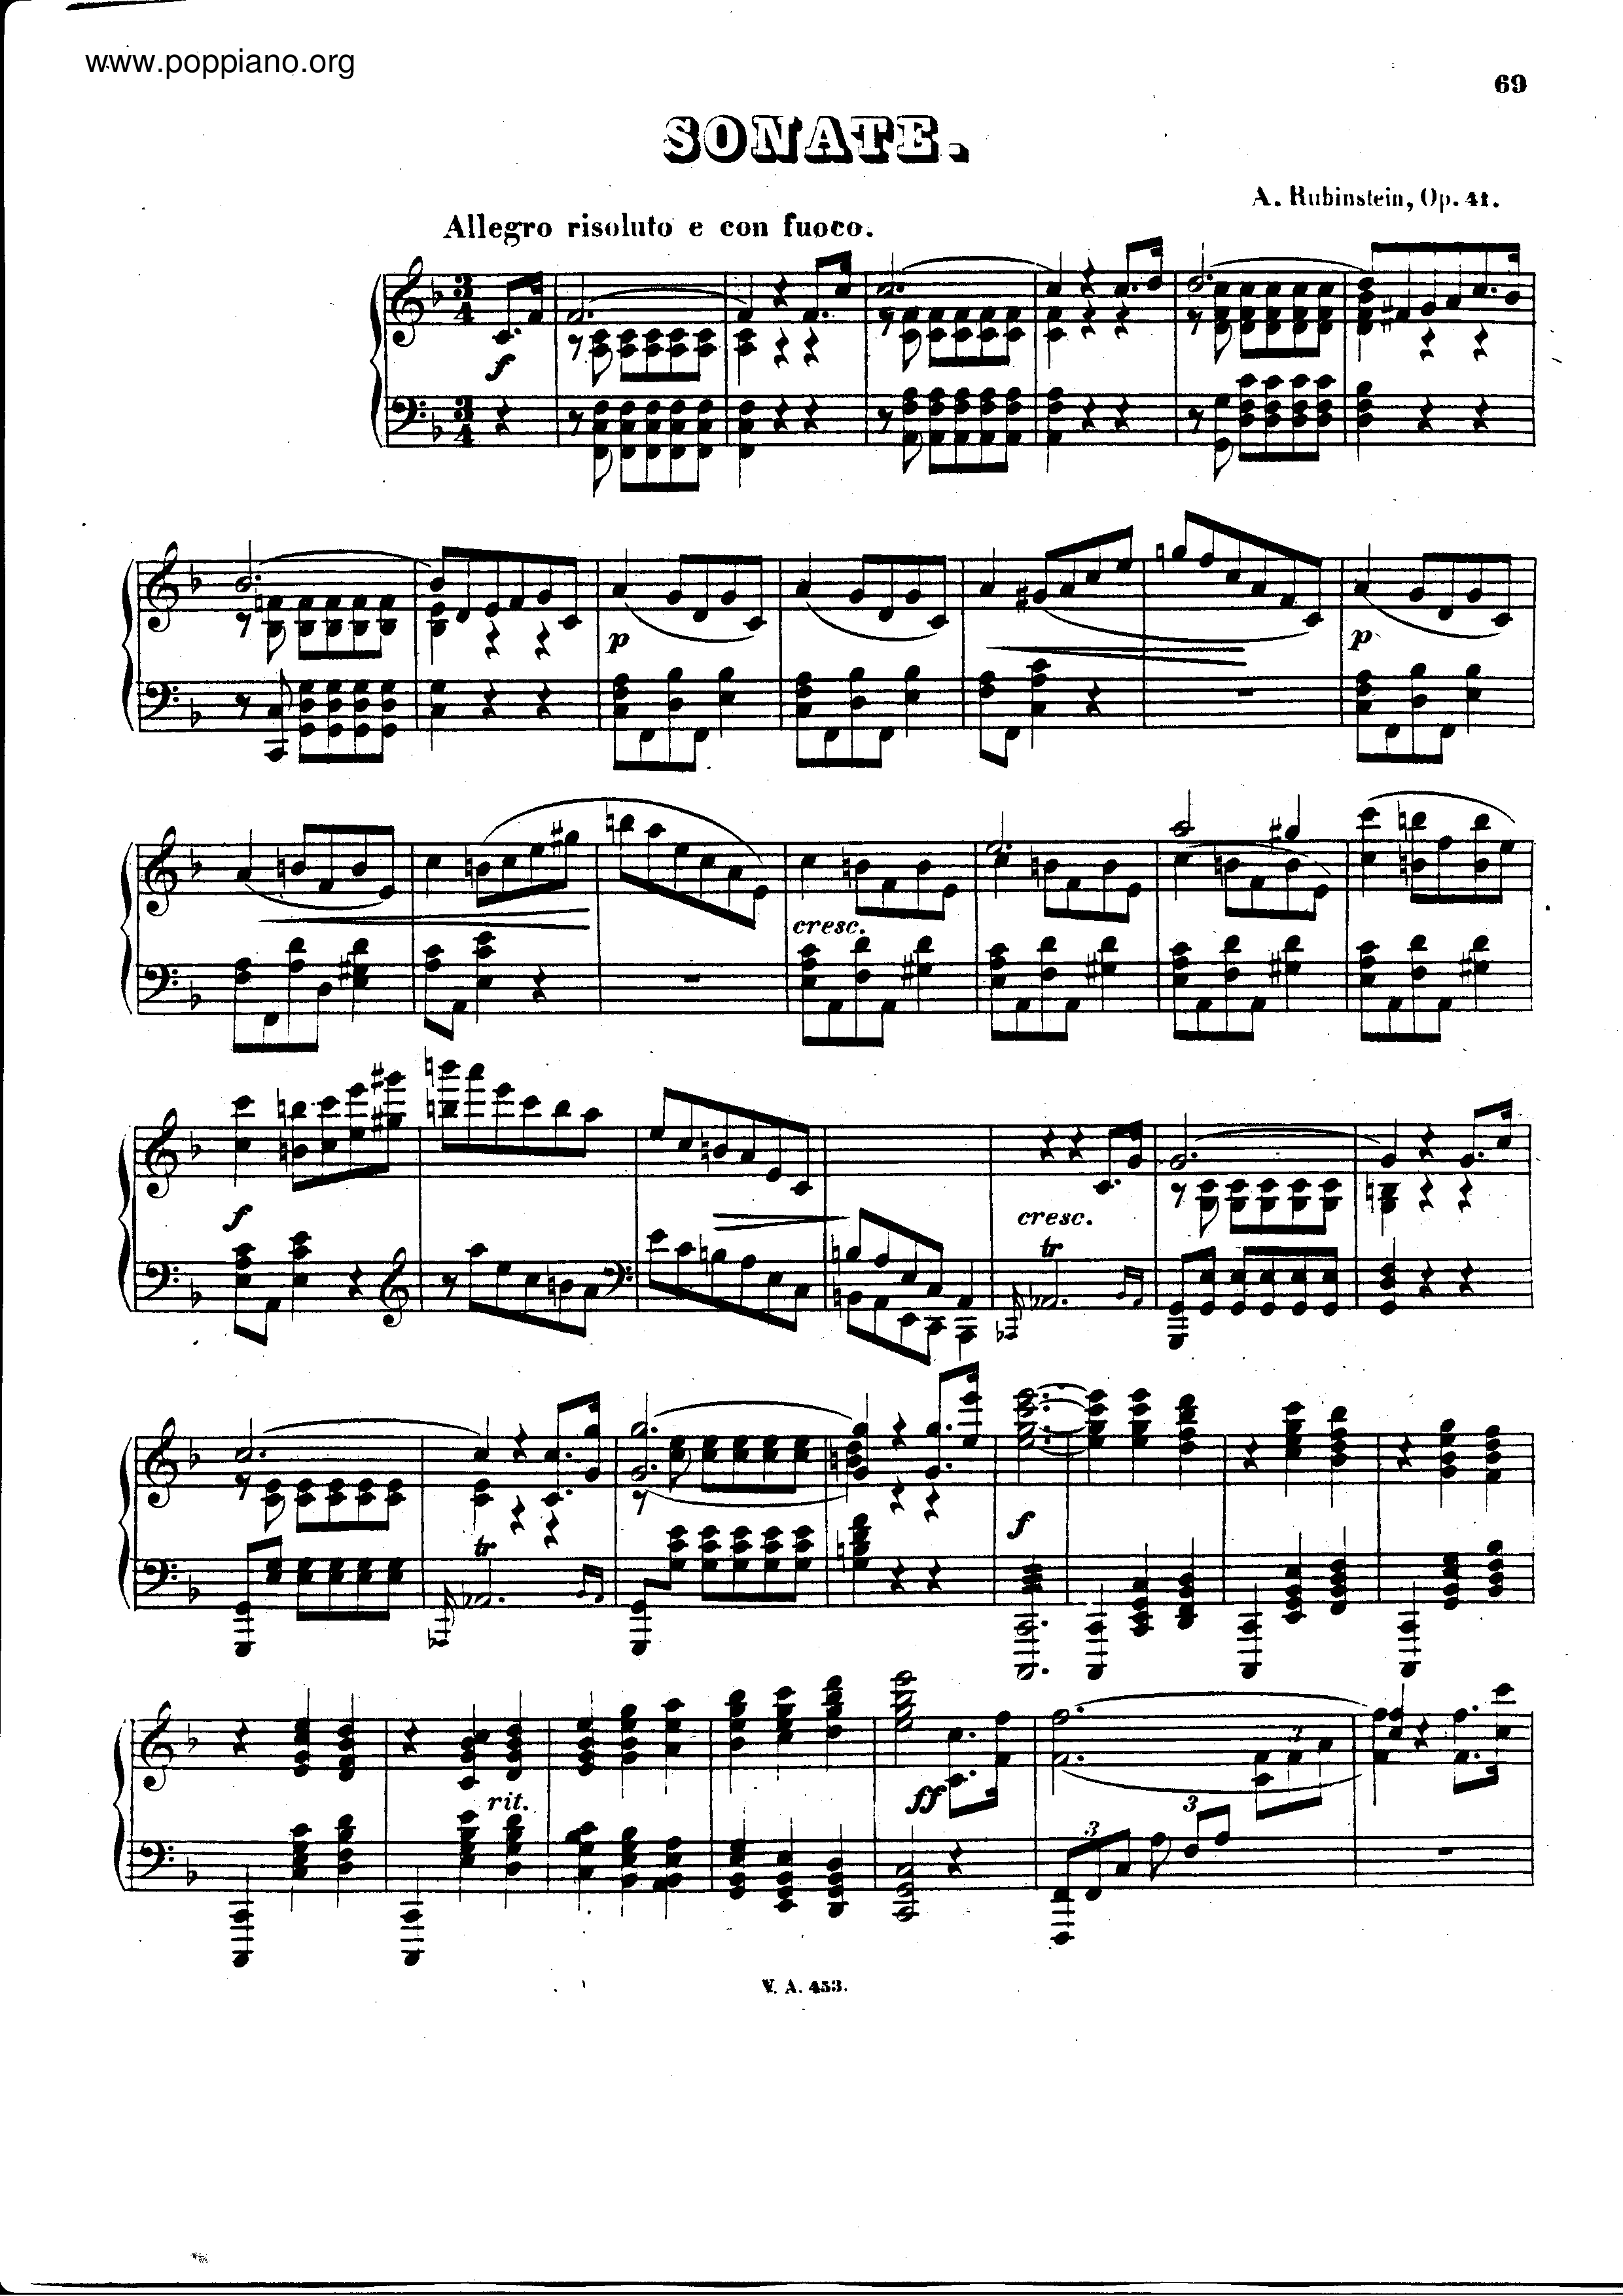 Piano sonata no.3 in F major, Op.41琴谱